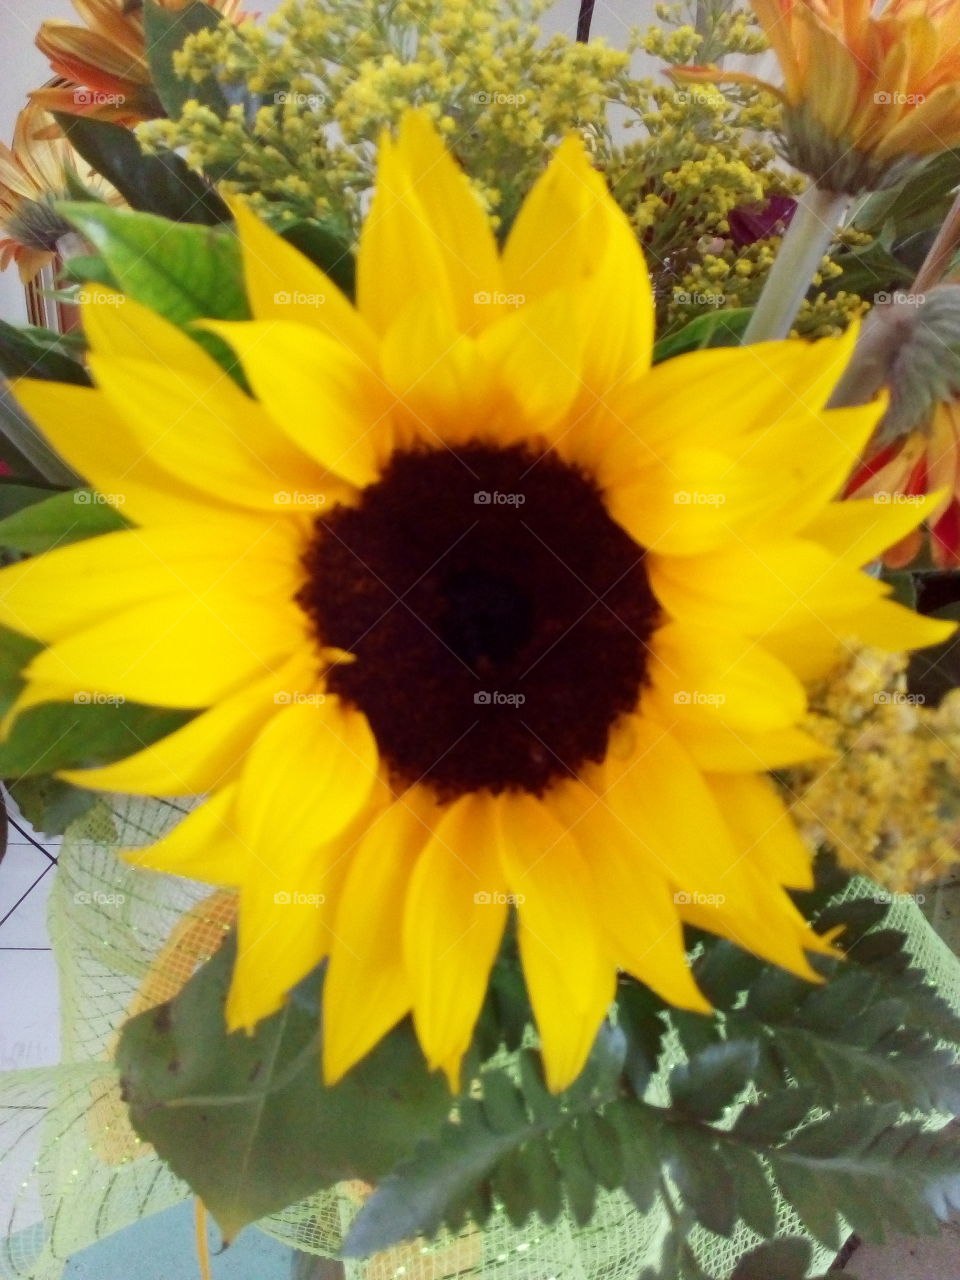 it's a sunflower!